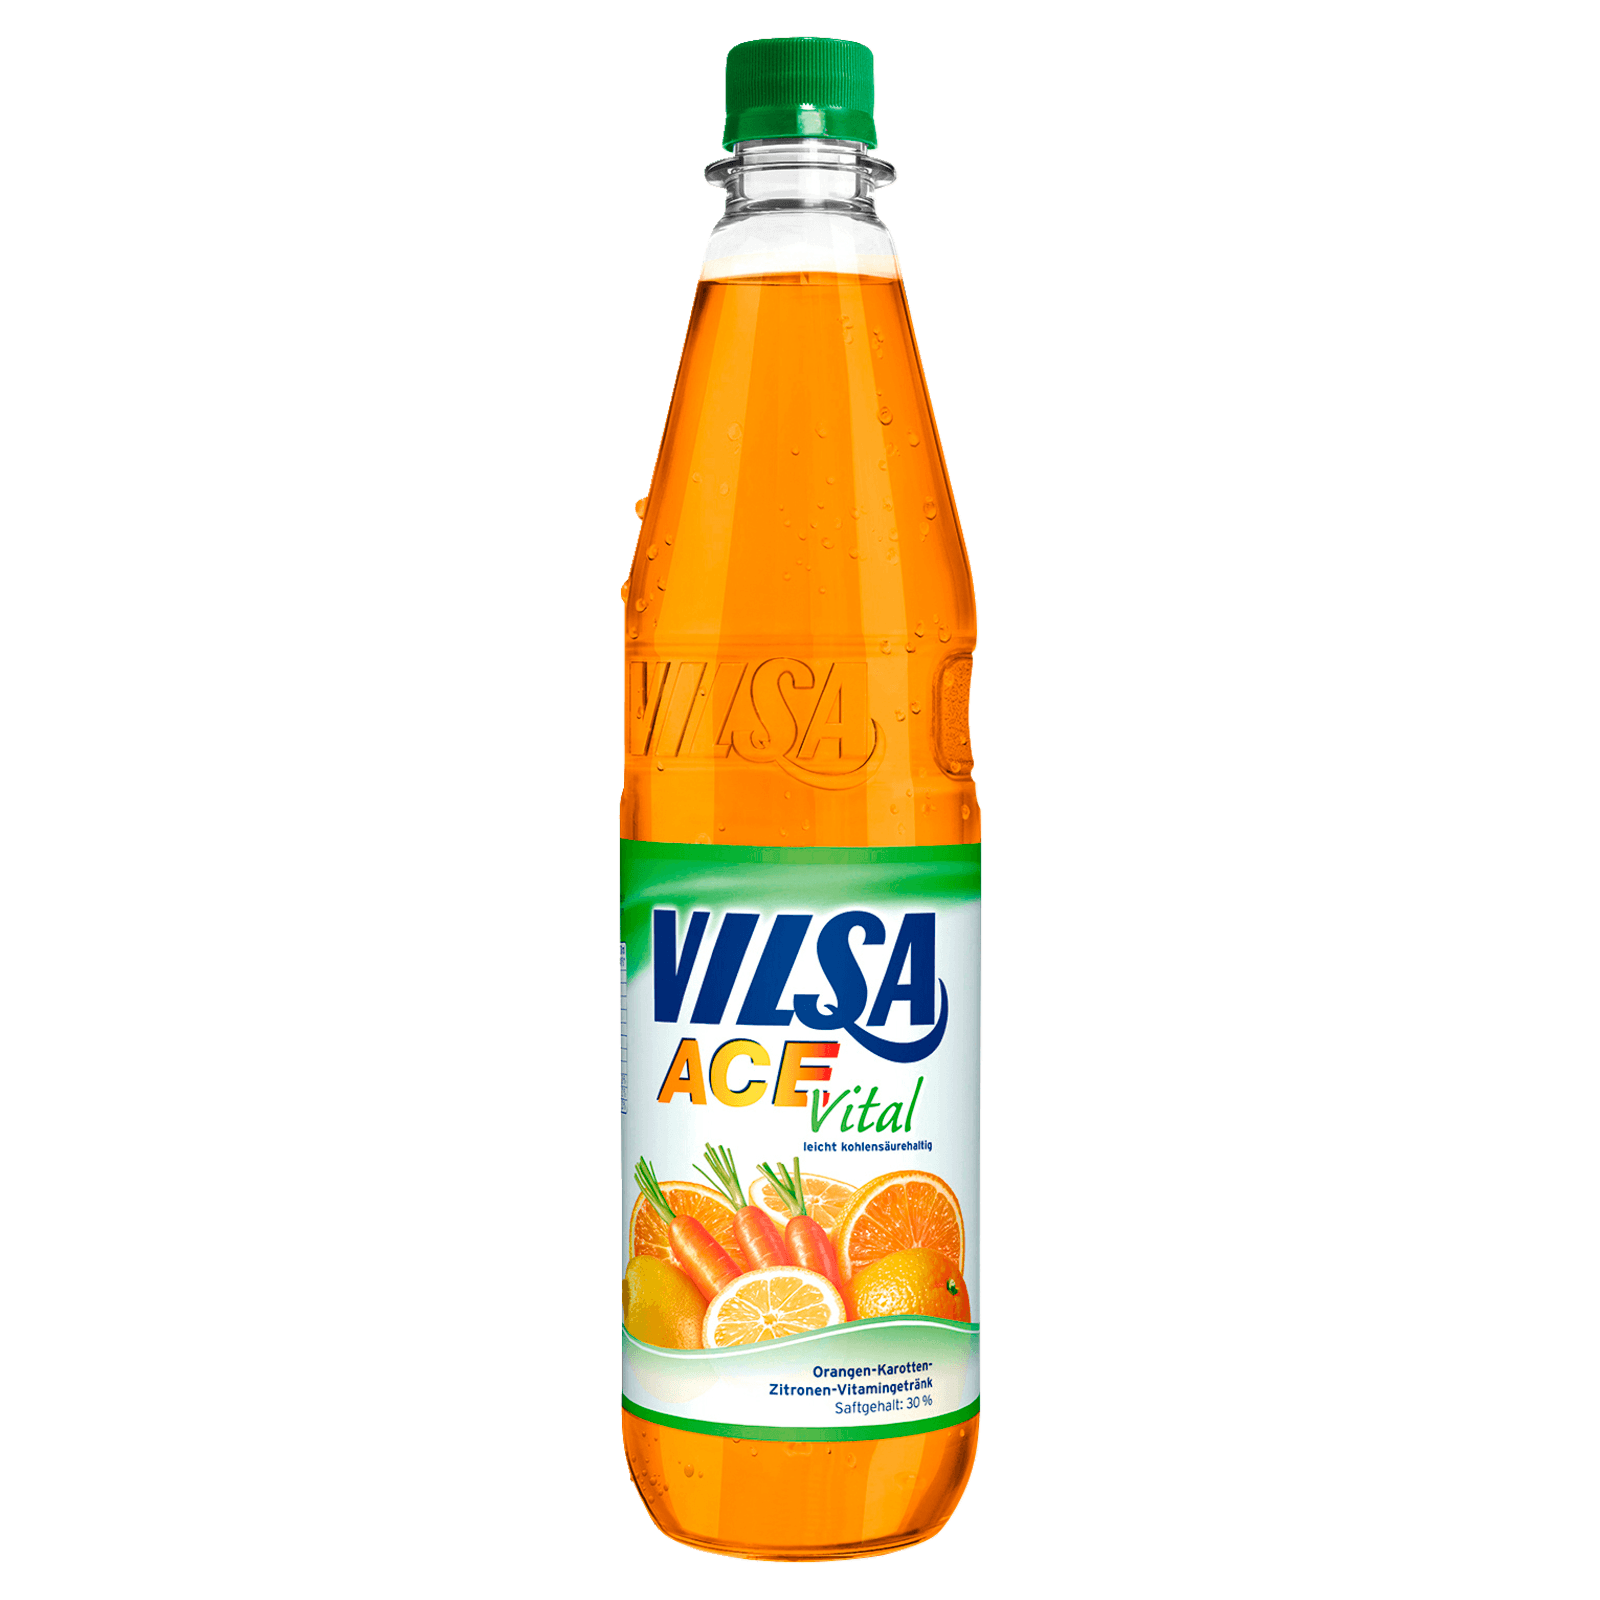 Vilsa Ace Vital 0,75l  für 0.99 EUR